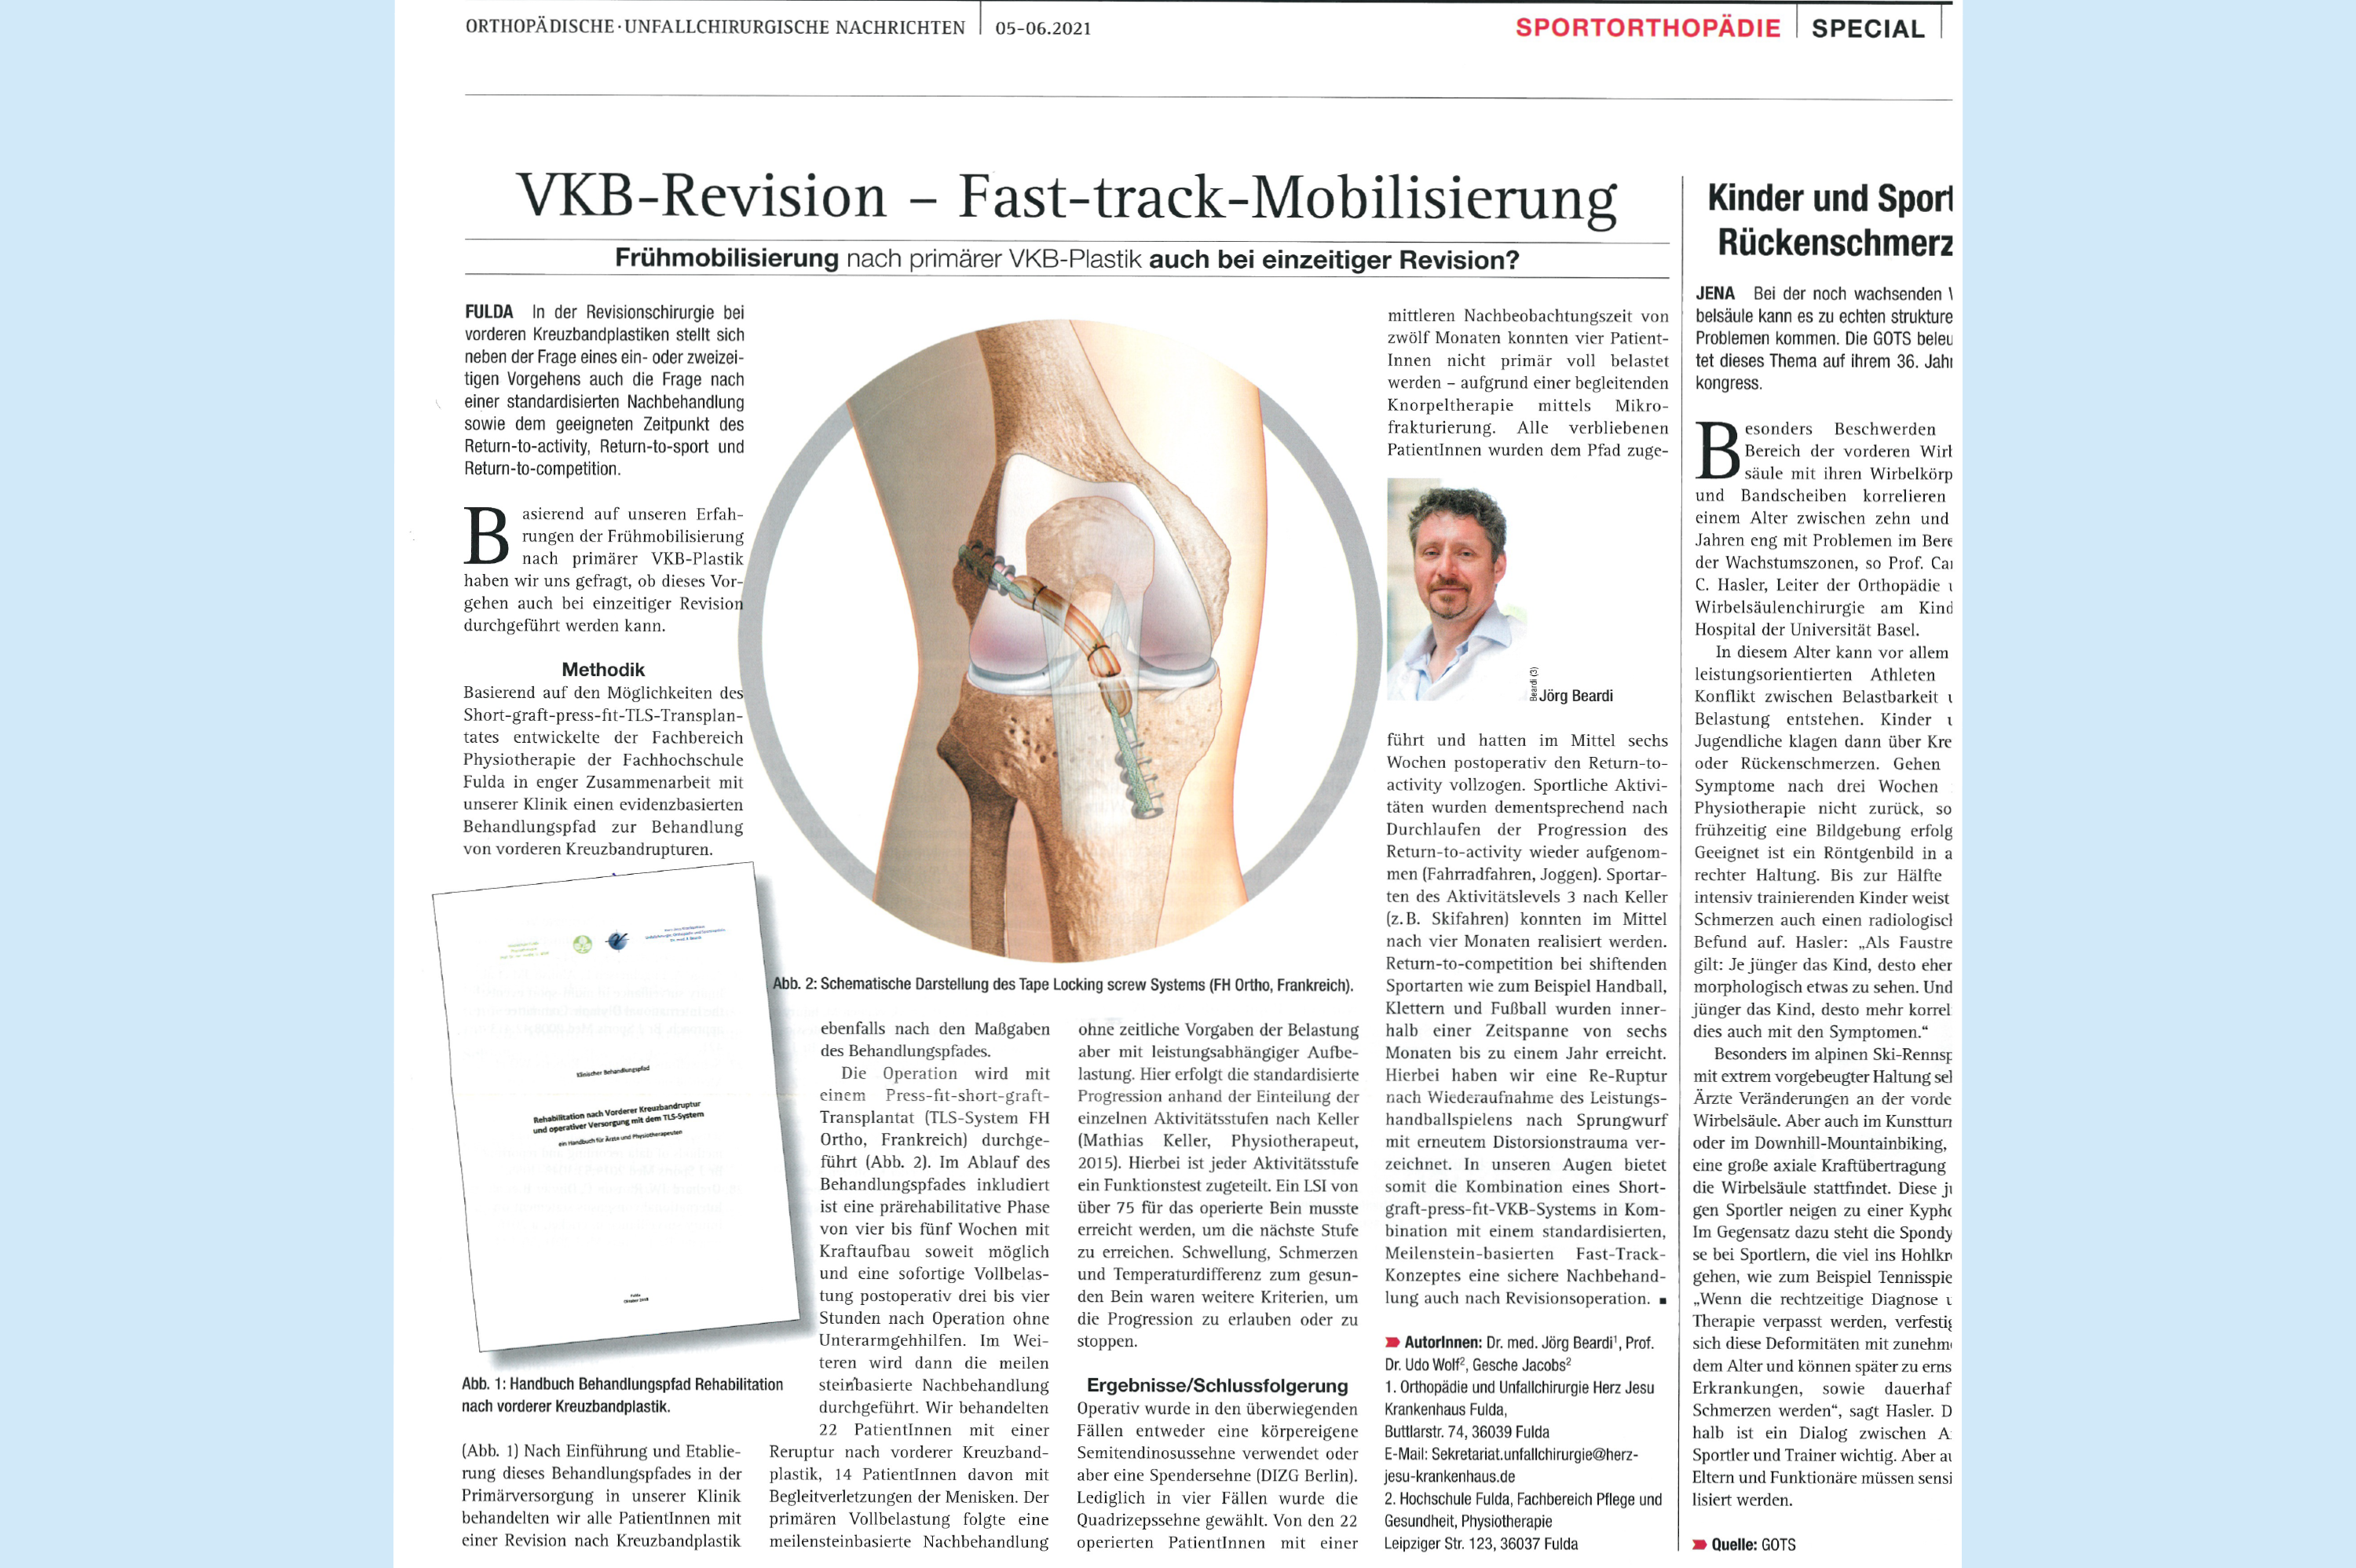 Orthopädische I Unfallchirurgische Nachrichten SEPCIAL: VKB-Revision - Fast-track-Mobilisierung